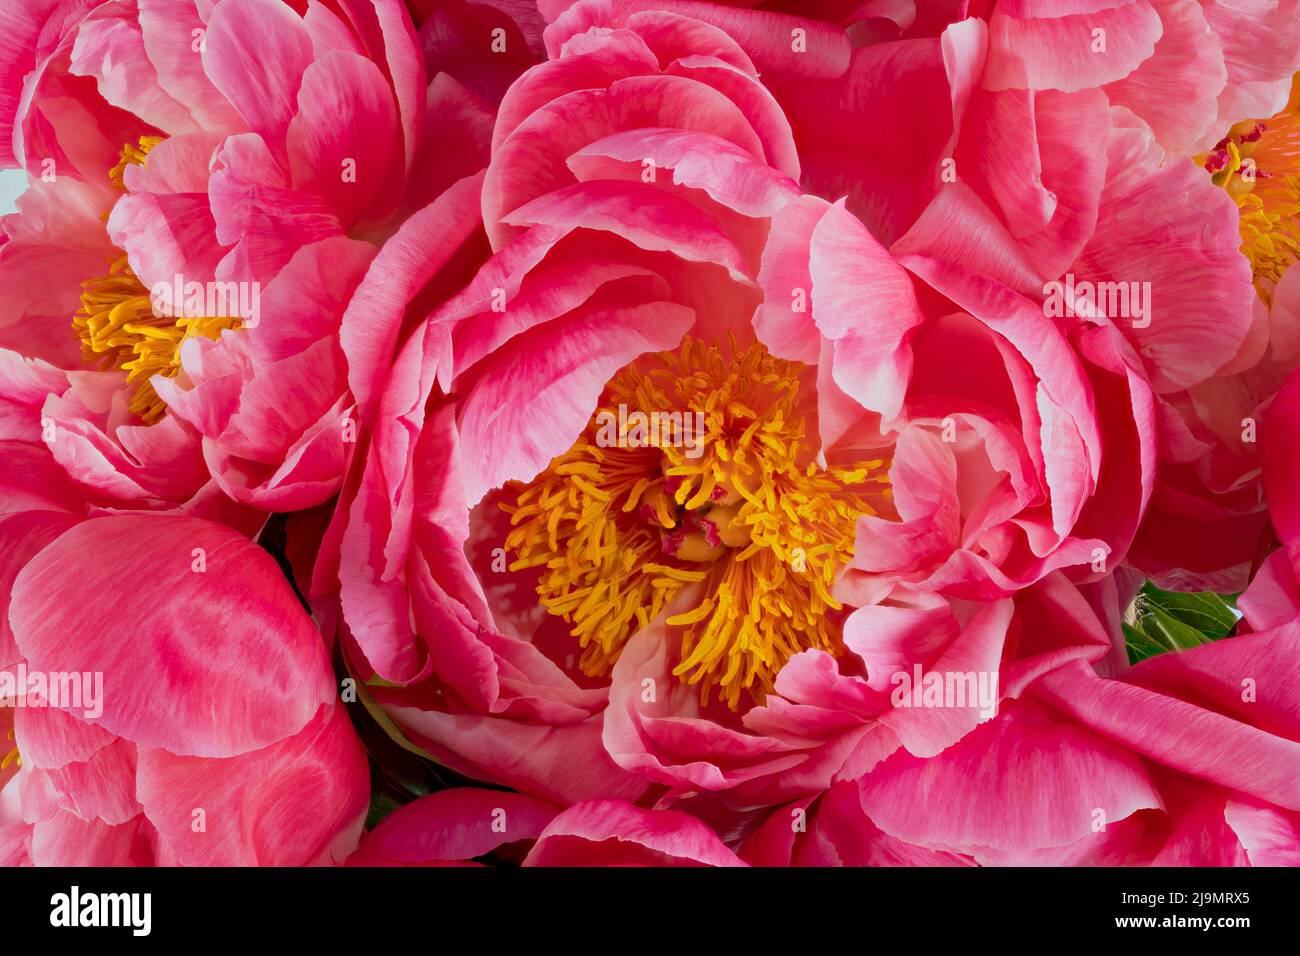 Gros plan sur le centre d'une belle fleur de pivoine rose, montrant les anthères et les étamines jaunes Banque D'Images